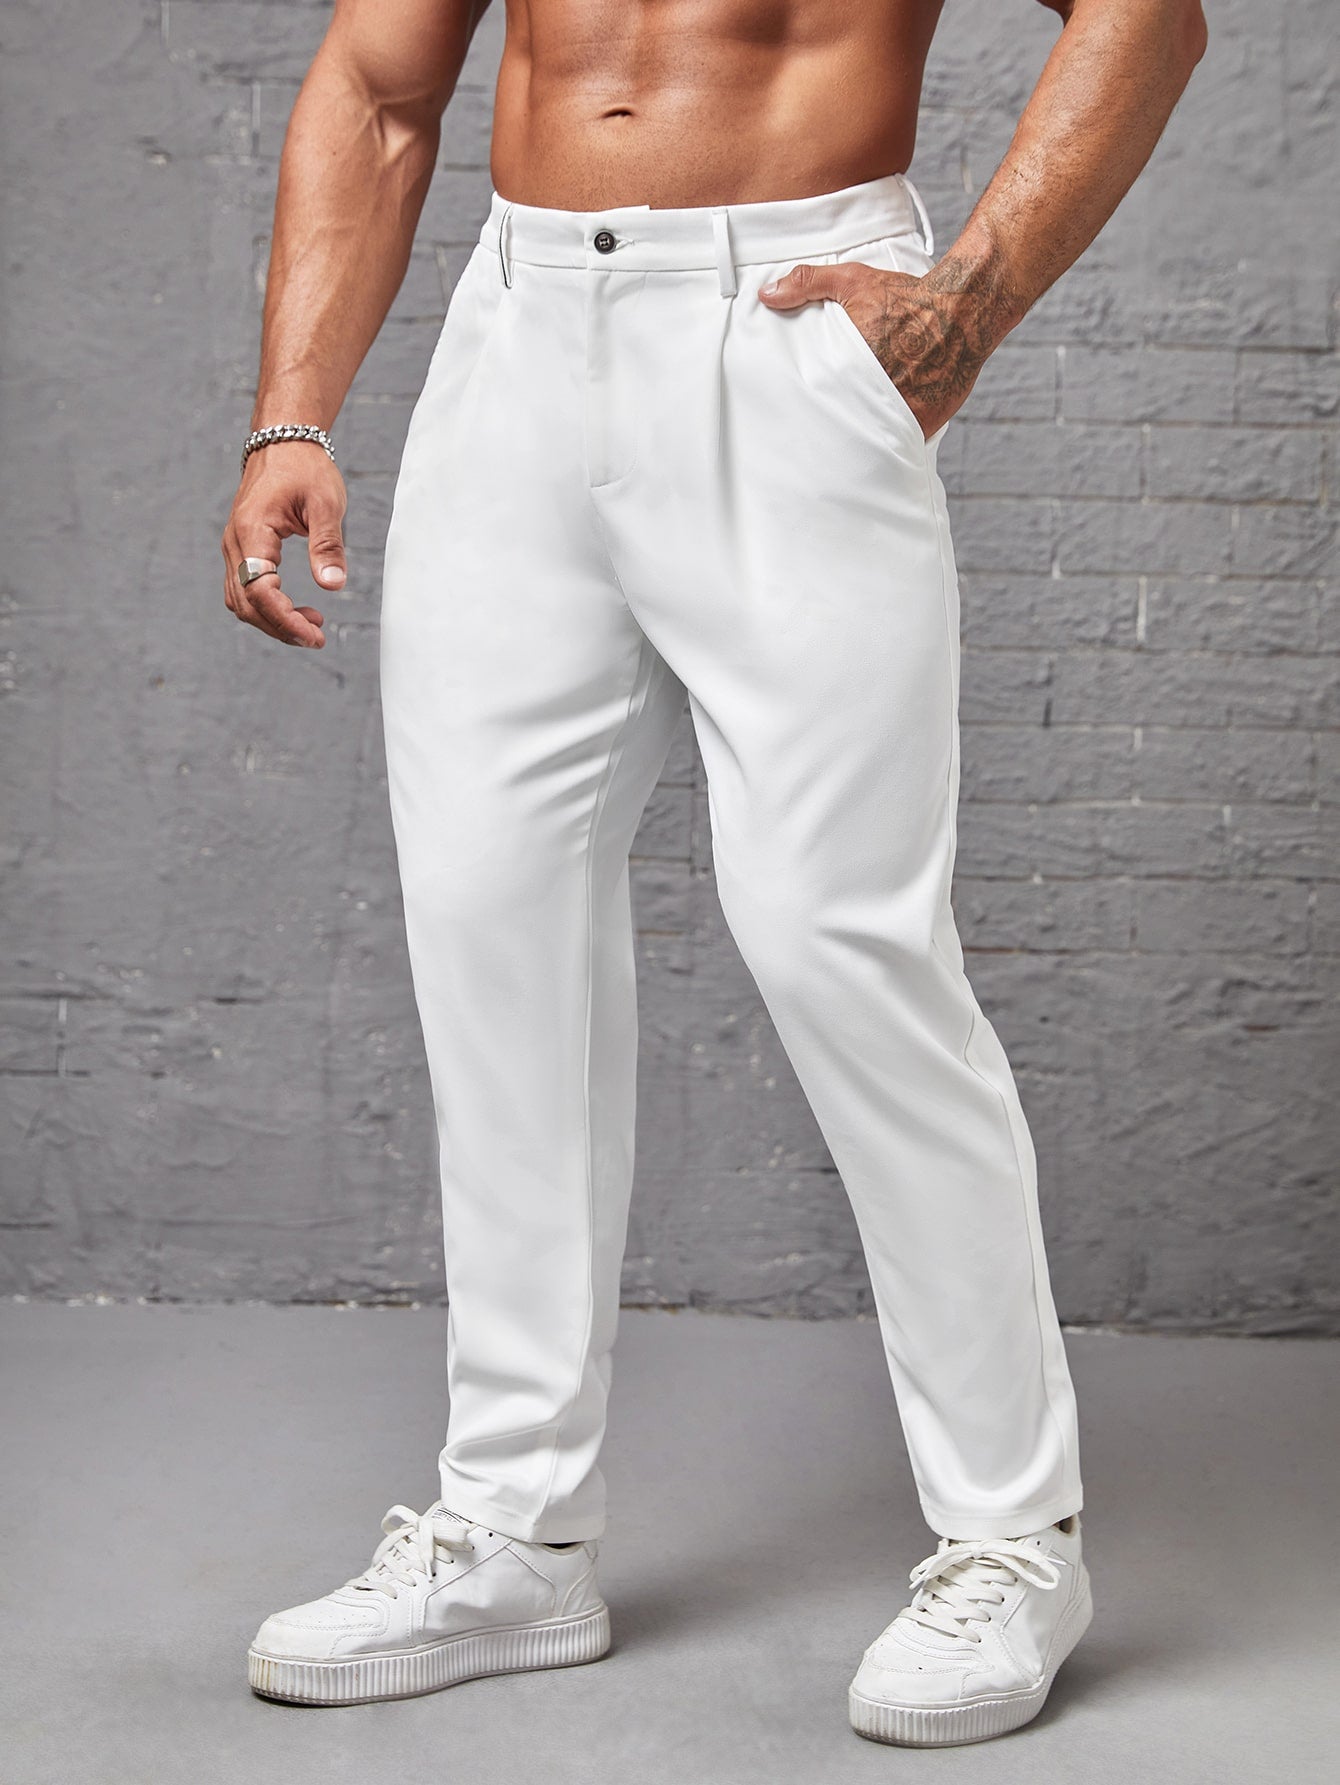 Men's Stylish Suit Pant